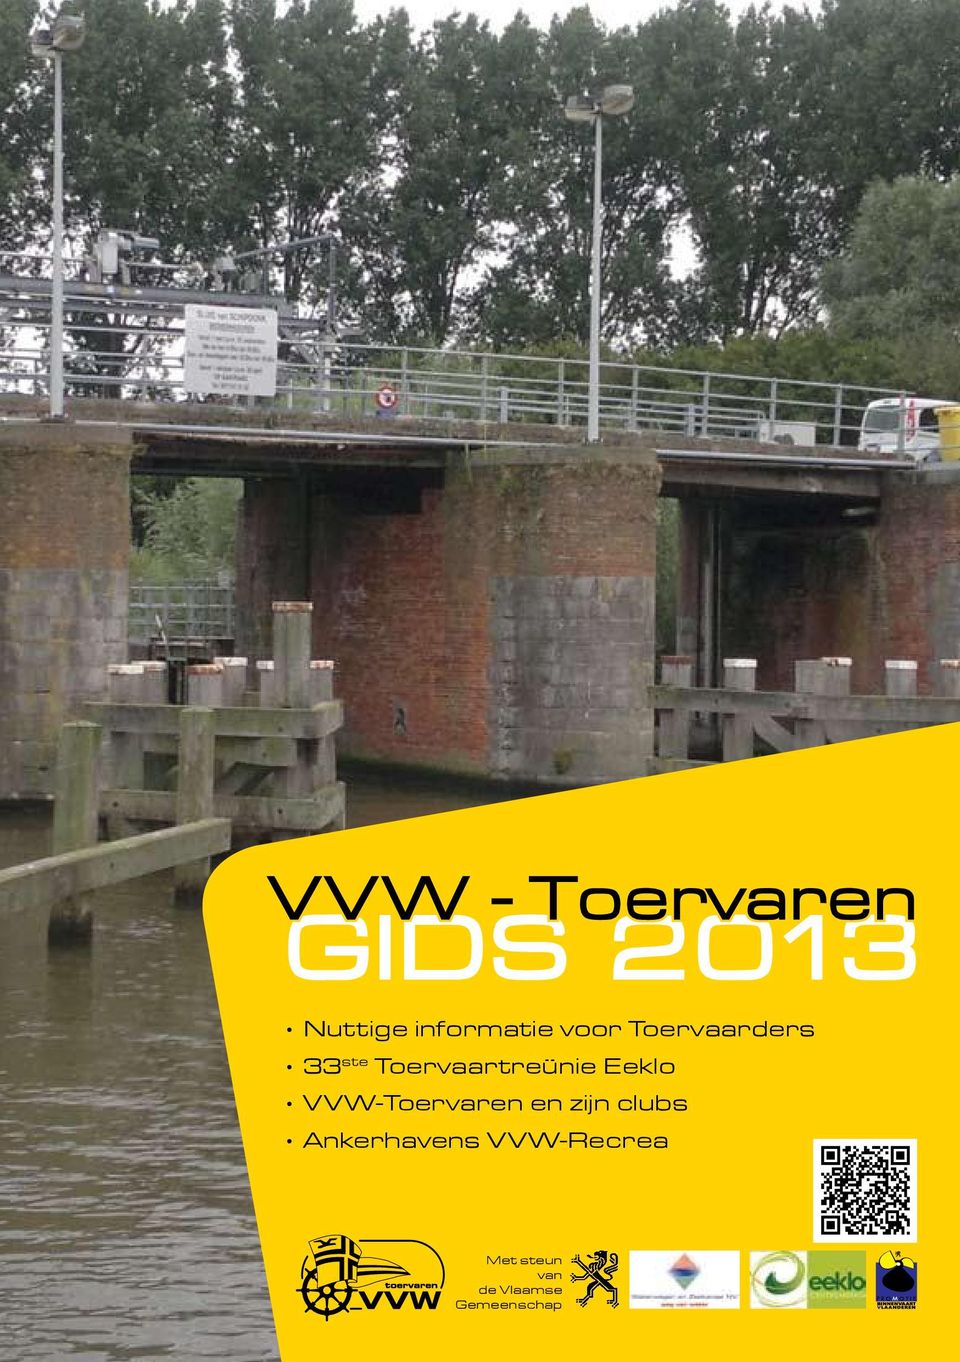 Eeklo VVW-Toervaren en zijn clubs Ankerhavens